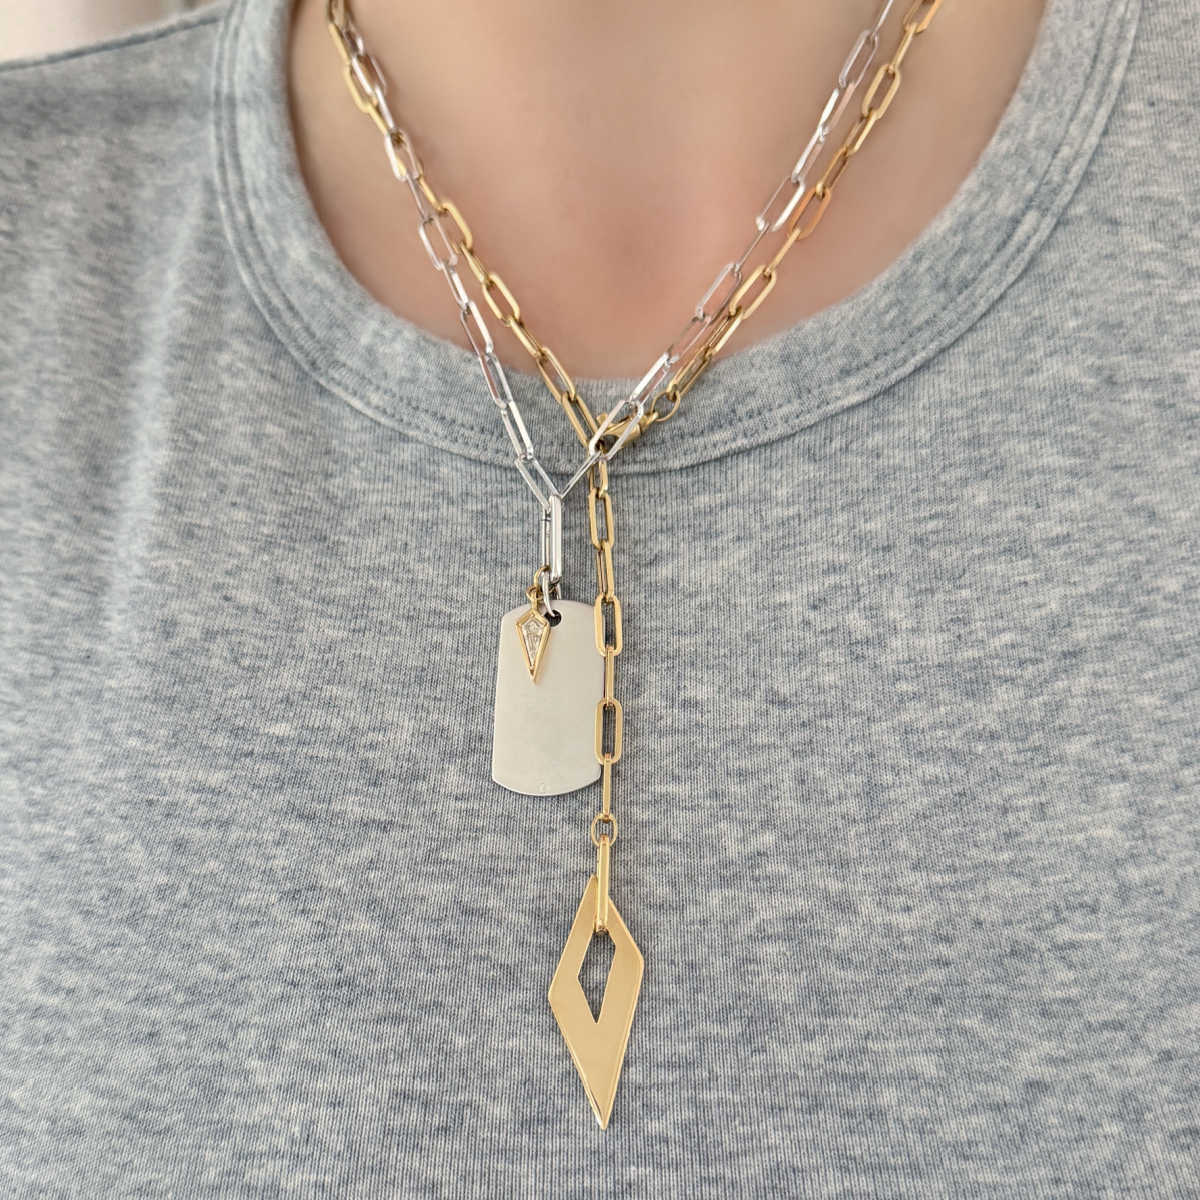 Gold Charm Holder | 14k Necklace Connector & Enhancer Clip on Model